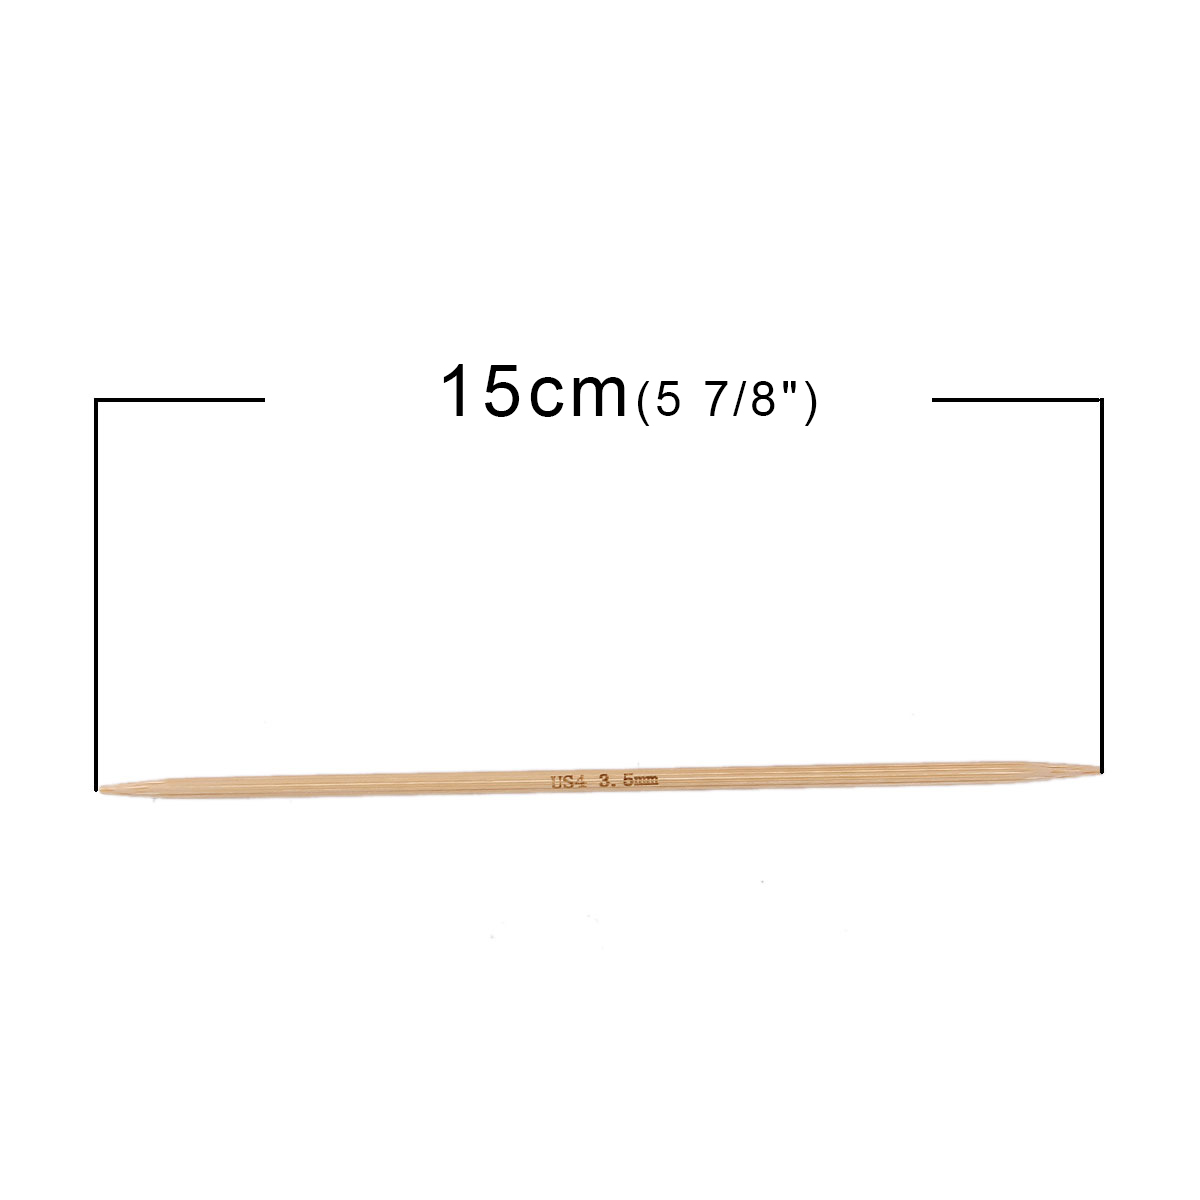 (US4 3.5mm) 竹 ダブルポイント 編み針 ナチュラル 15cm 長さ、 1 セット ( 5 個/セット) の画像